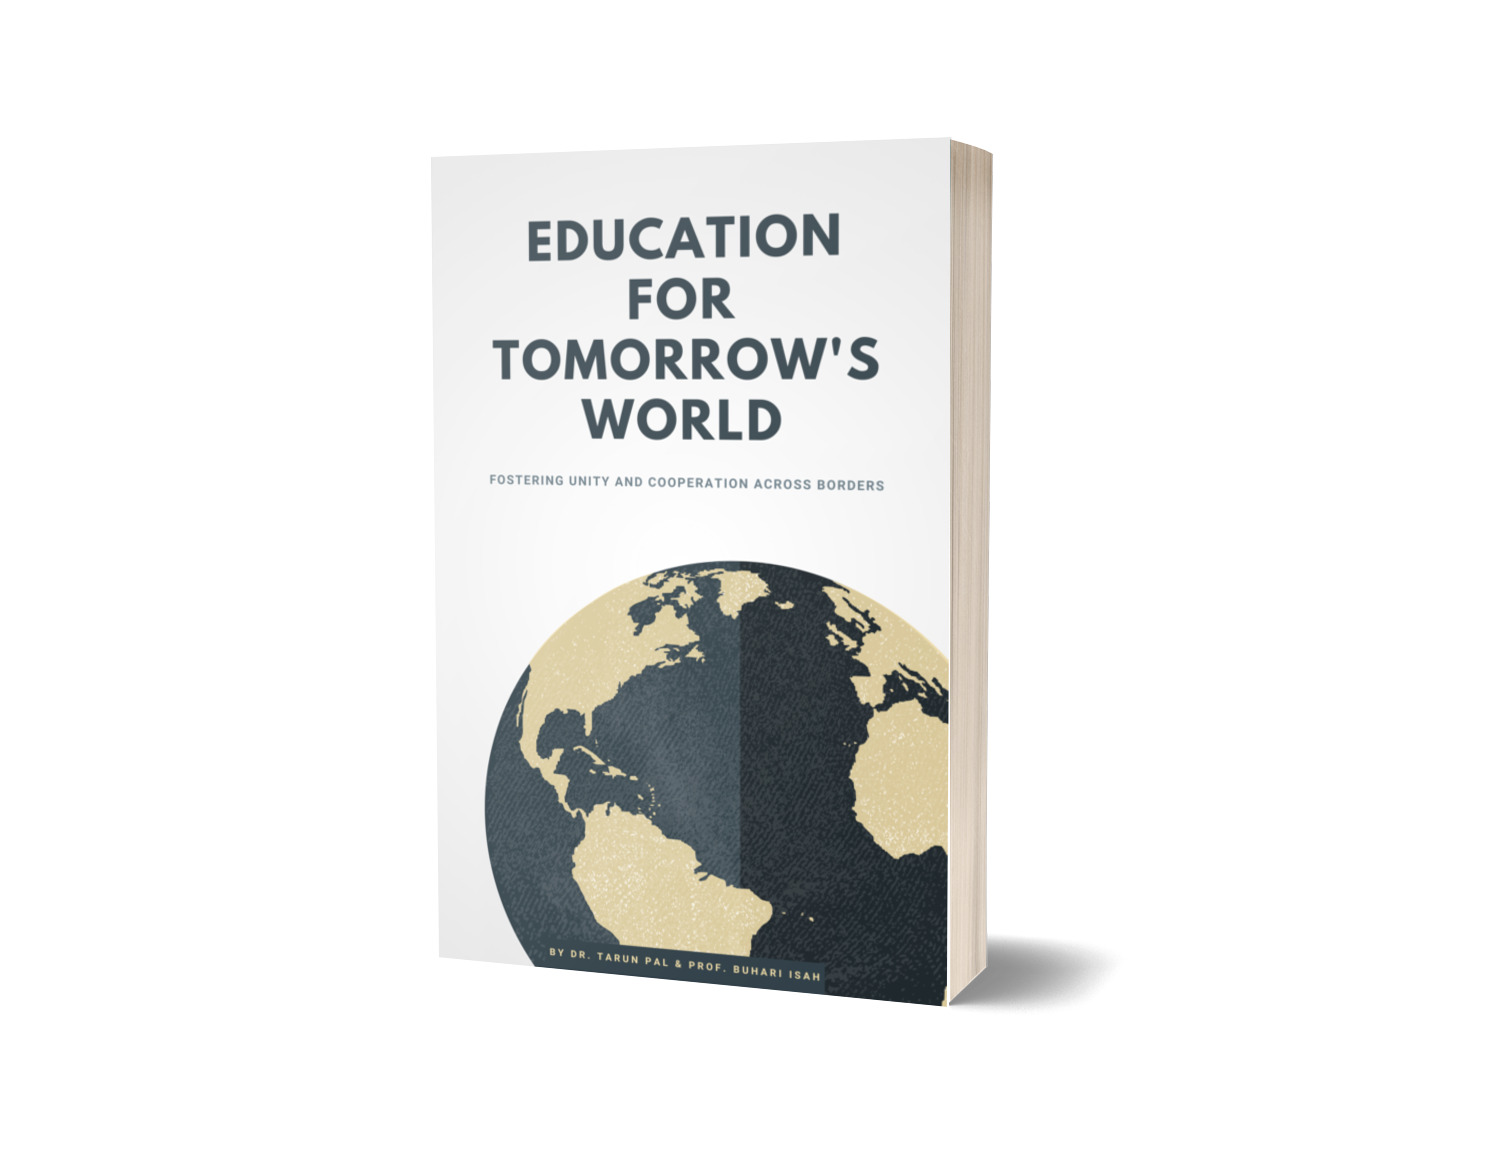 หนังสือใหม่ “การศึกษาเพื่อโลกแห่งอนาคต” โดย ดร. ทรัน ปาล จะจําหน่ายบนหลายแพลตฟอร์ม